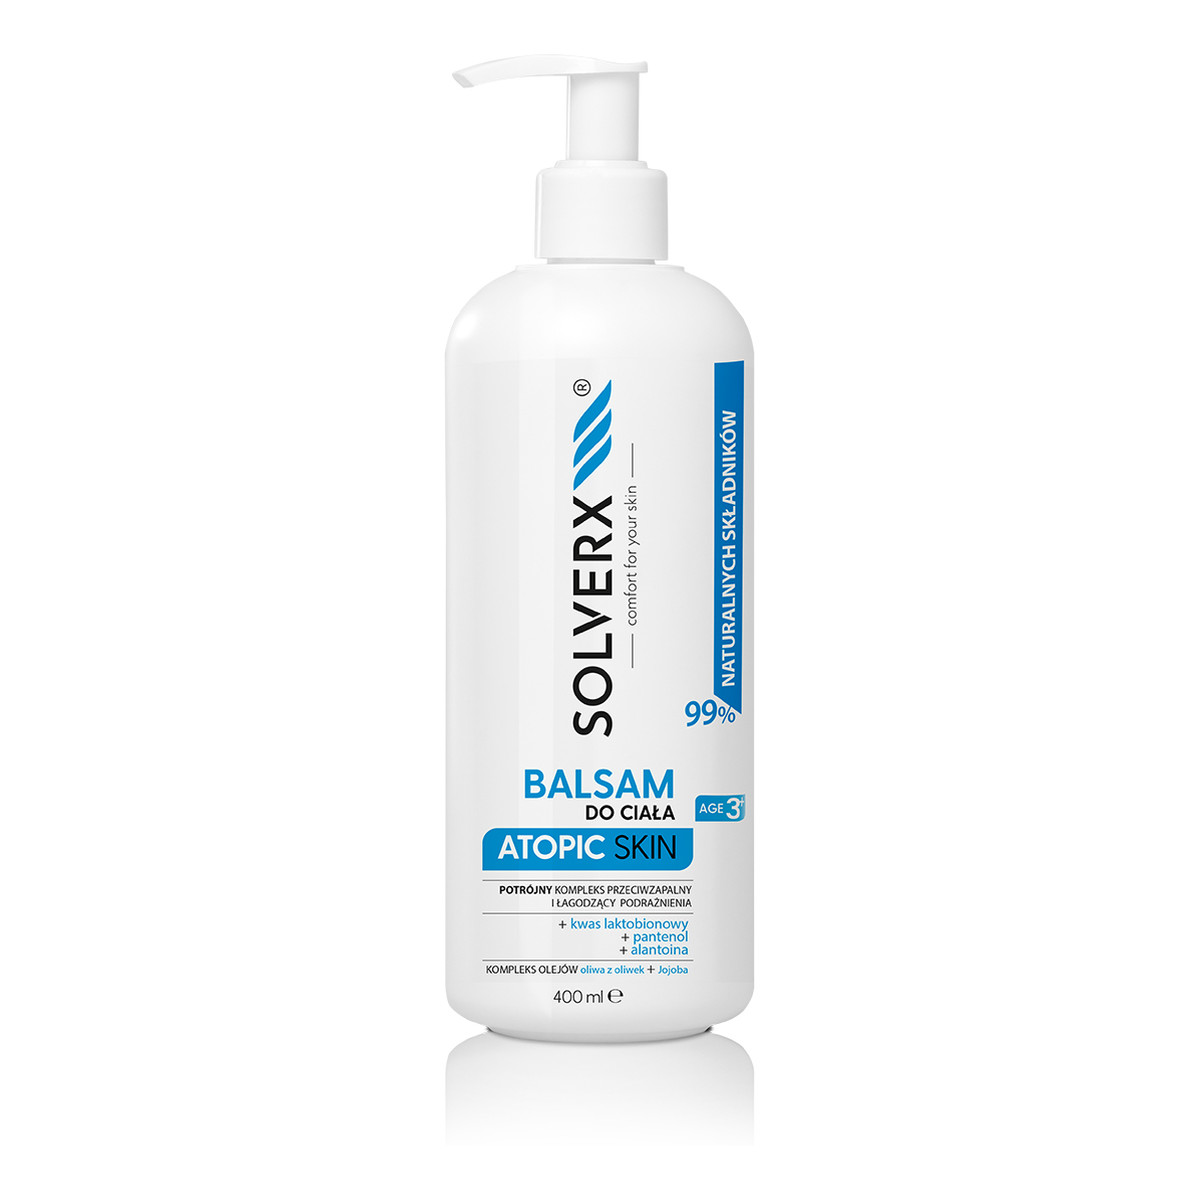 Solverx Atopic Skin Balsam do ciała - łagodzący podrażnienia i przeciwzapalny 400ml